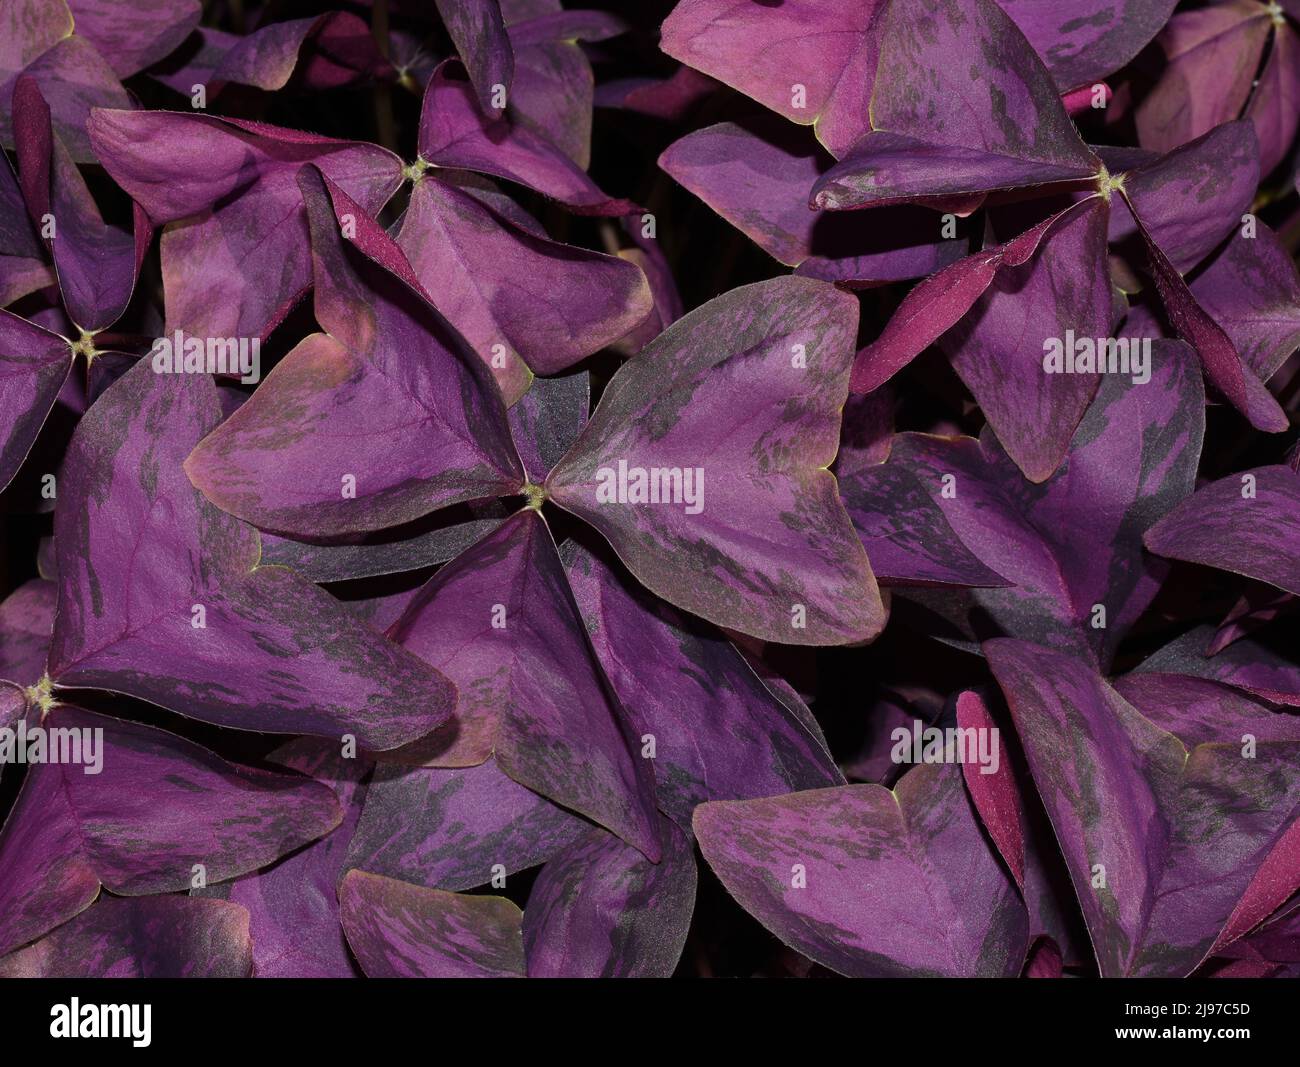 Oxalis triangularis false shamrock plant purple foliage Stock Photo